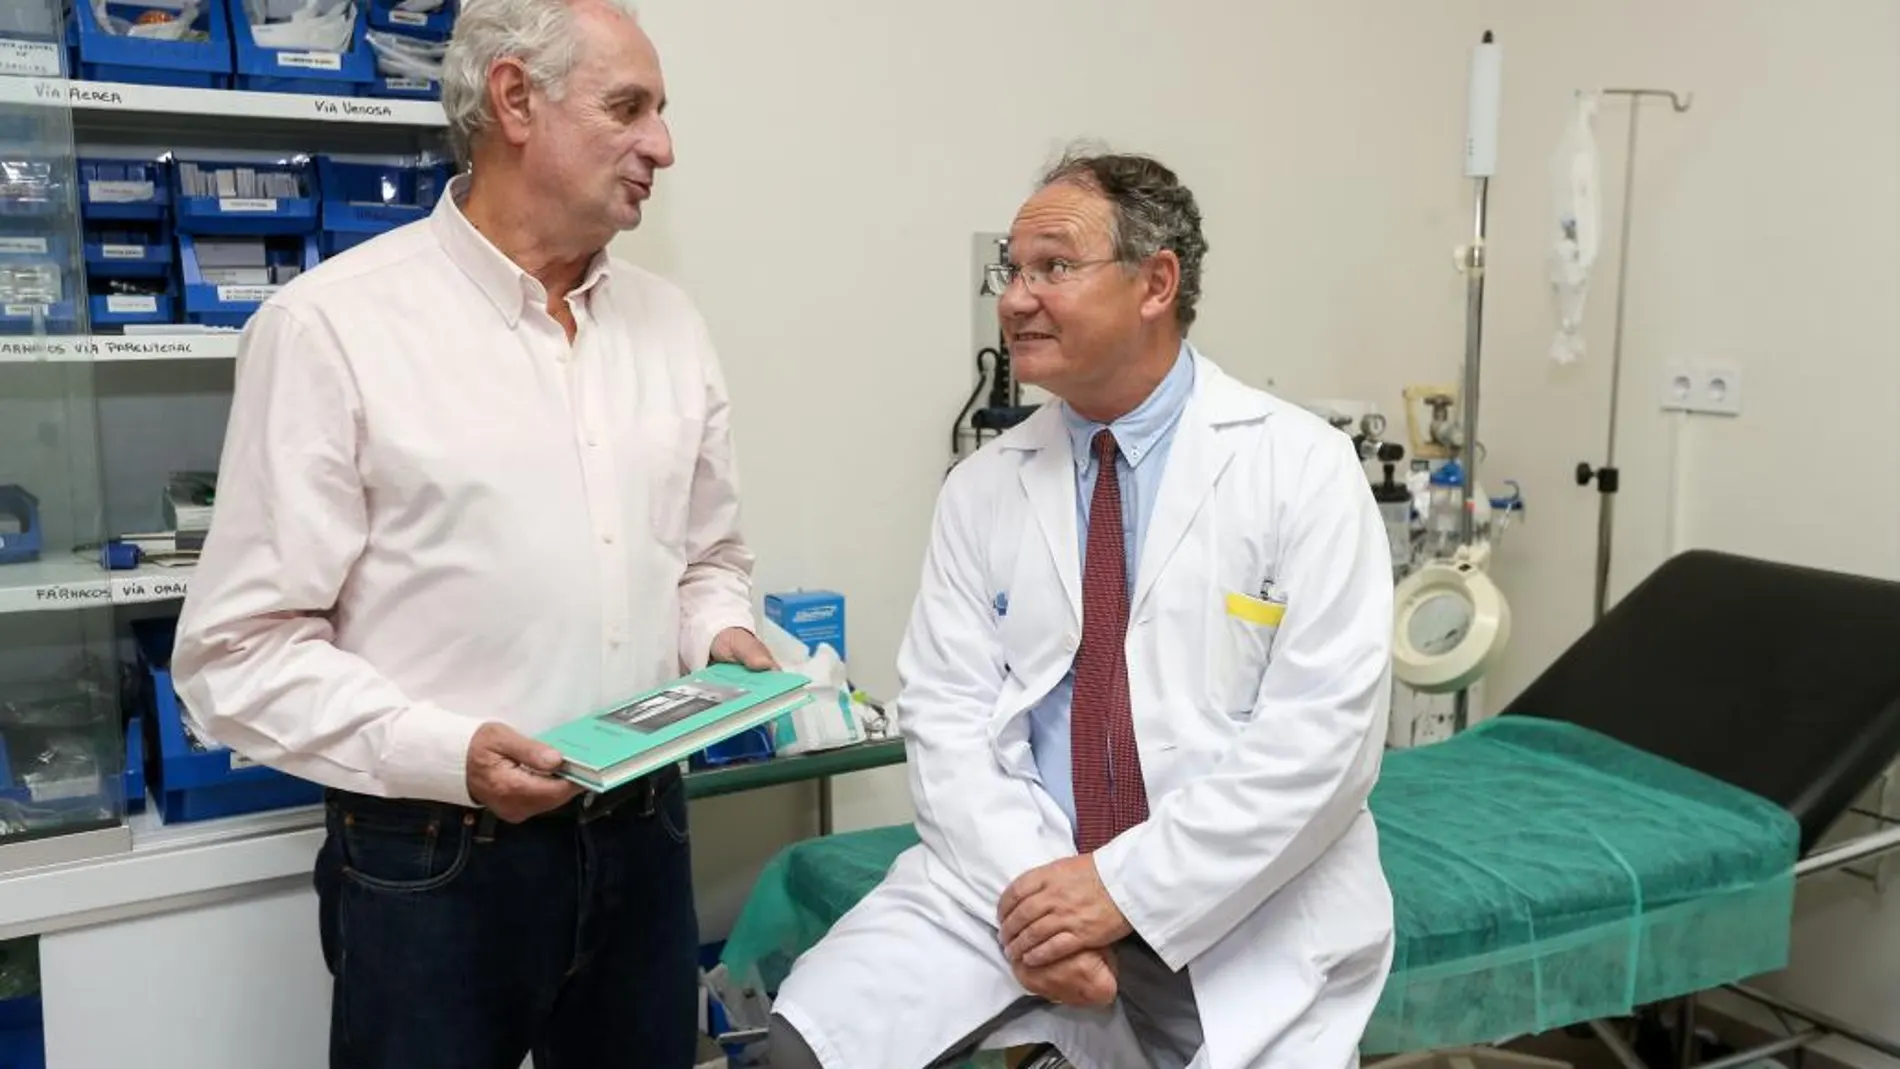 El doctor Antonio Otero conversa, en un centro hospitalario, con el editor Julio Martínez, que tiene el libro en la mano